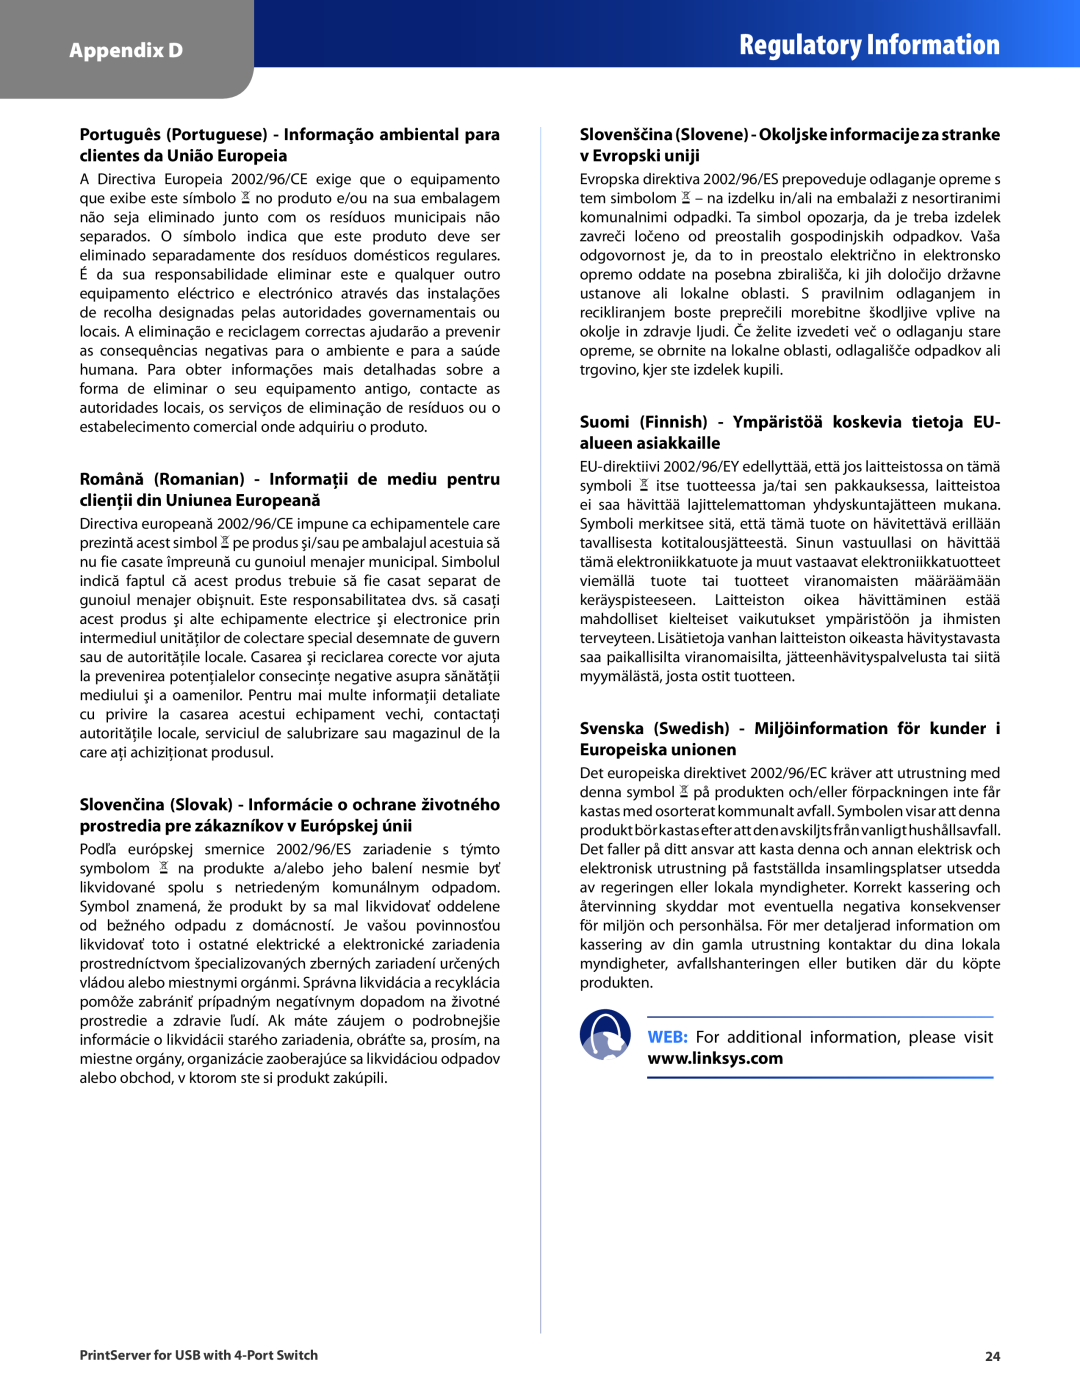 Cisco Systems PSUS4 Regulatory Information, Appendix D, Suomi Finnish - Ympäristöä koskevia tietoja EU- alueen asiakkaille 